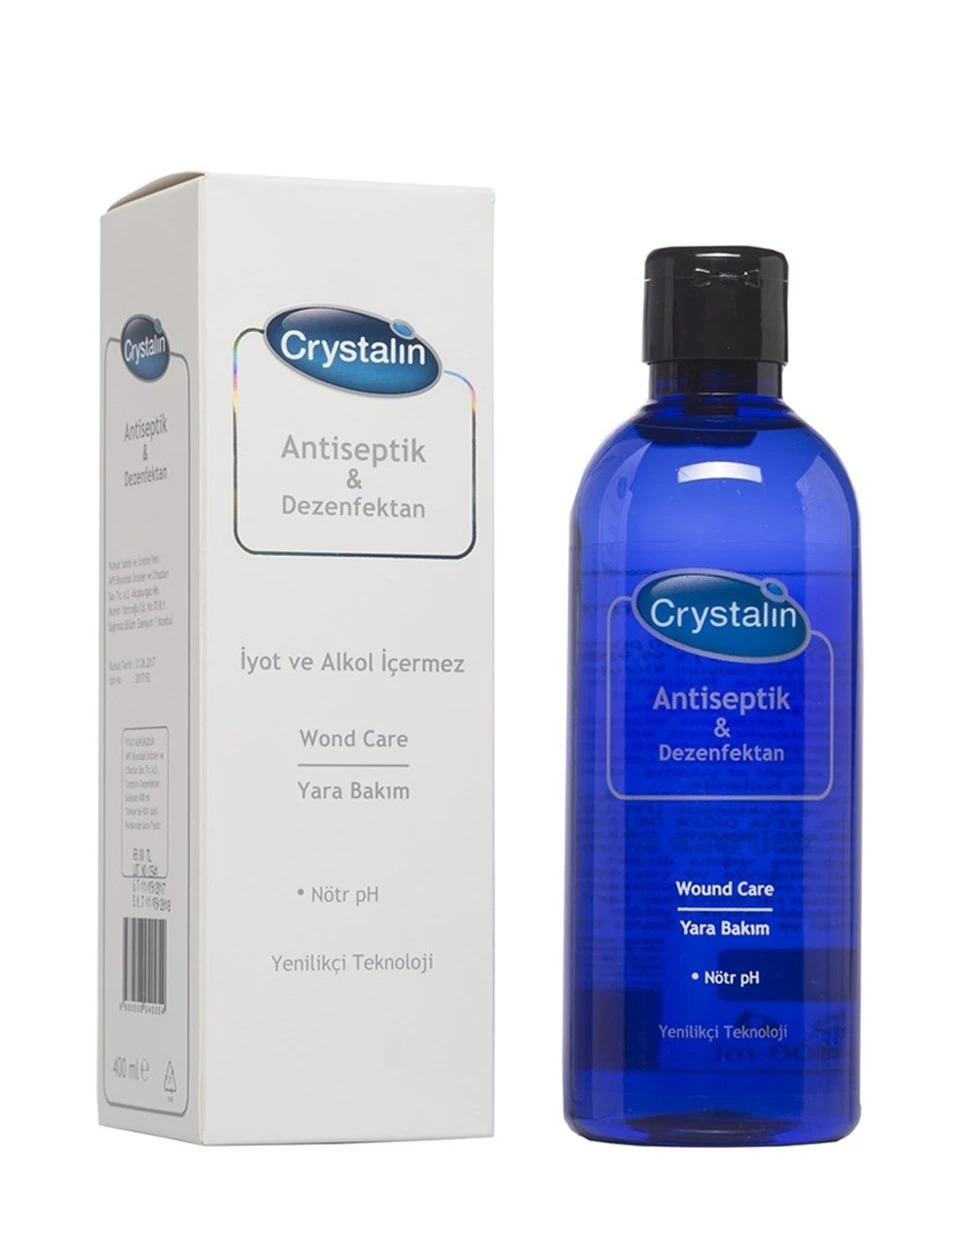 Crystalin Antiseptik & Dezenfektan Likit Solüsyon 400 ml